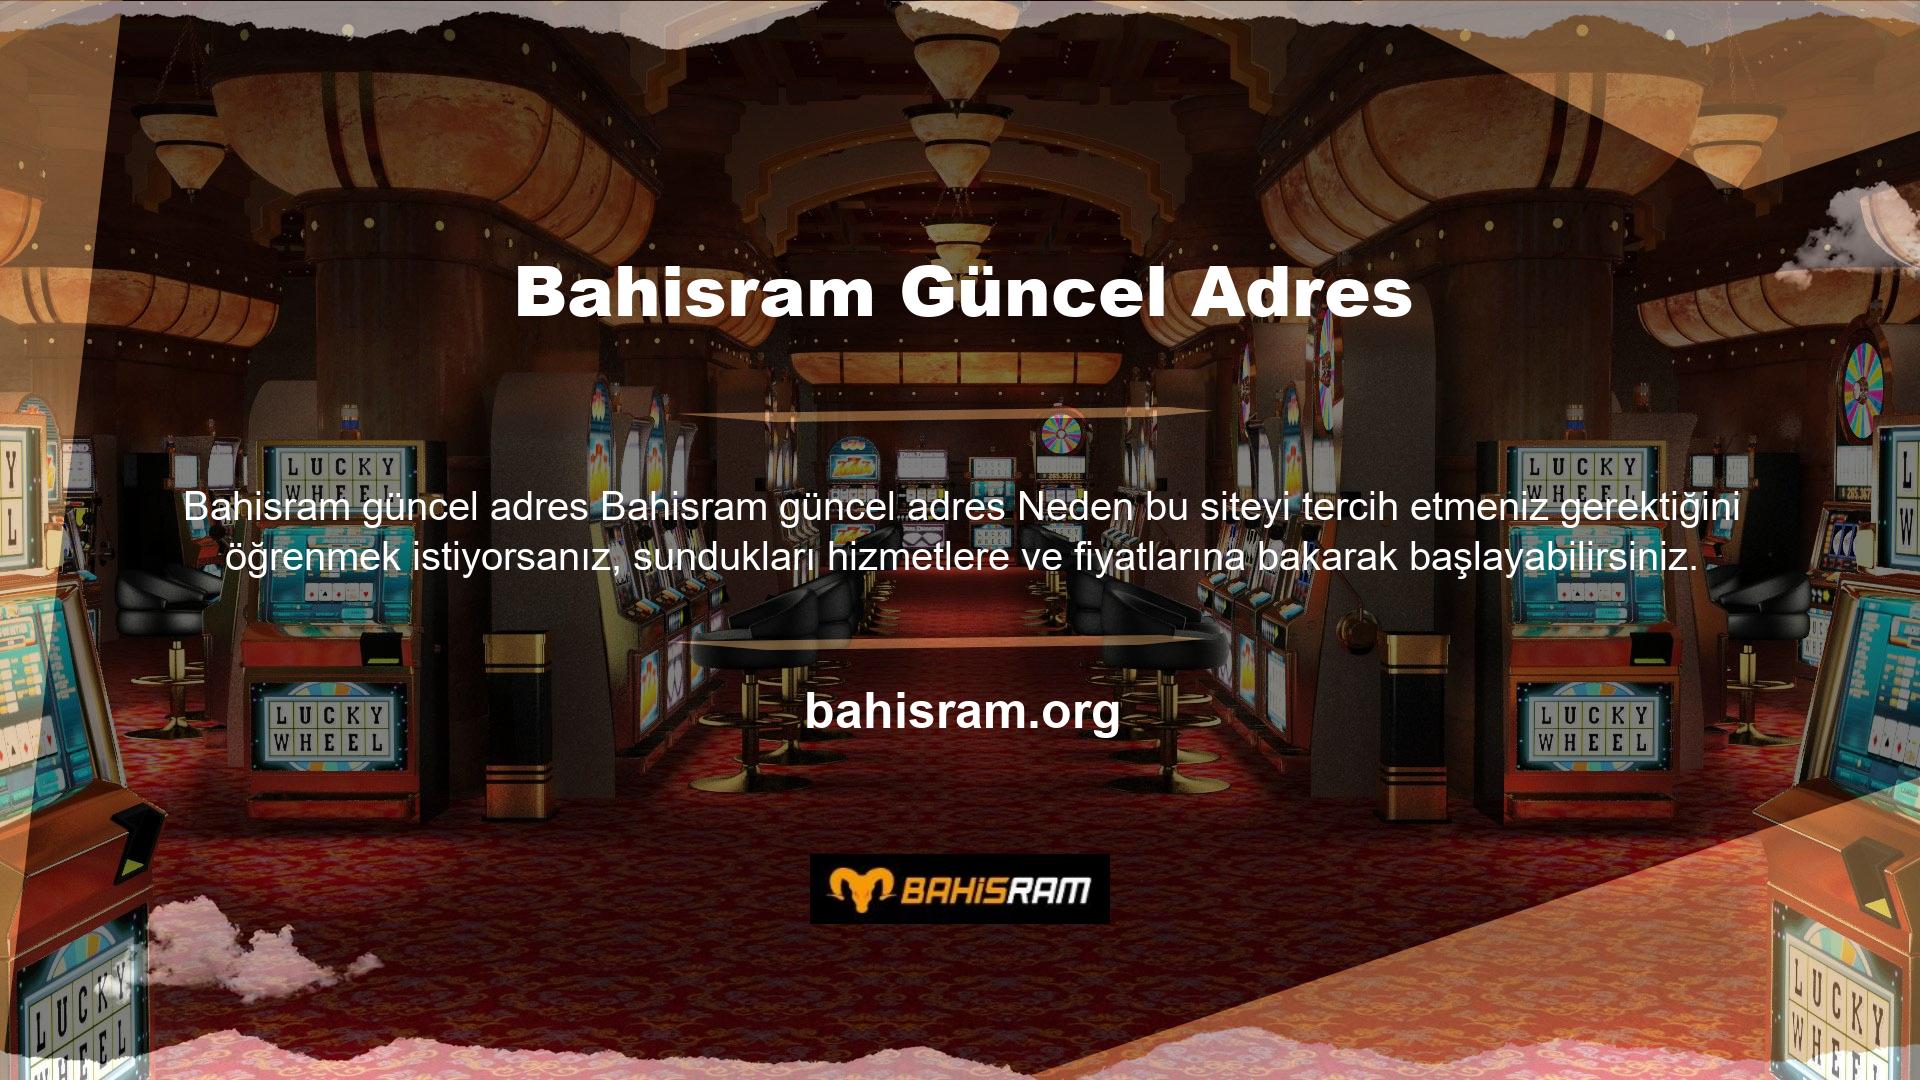 Bahisram bağlandığınızda aradığınız ve mevcut olan tüm hizmetler karşınıza çıkacaktır